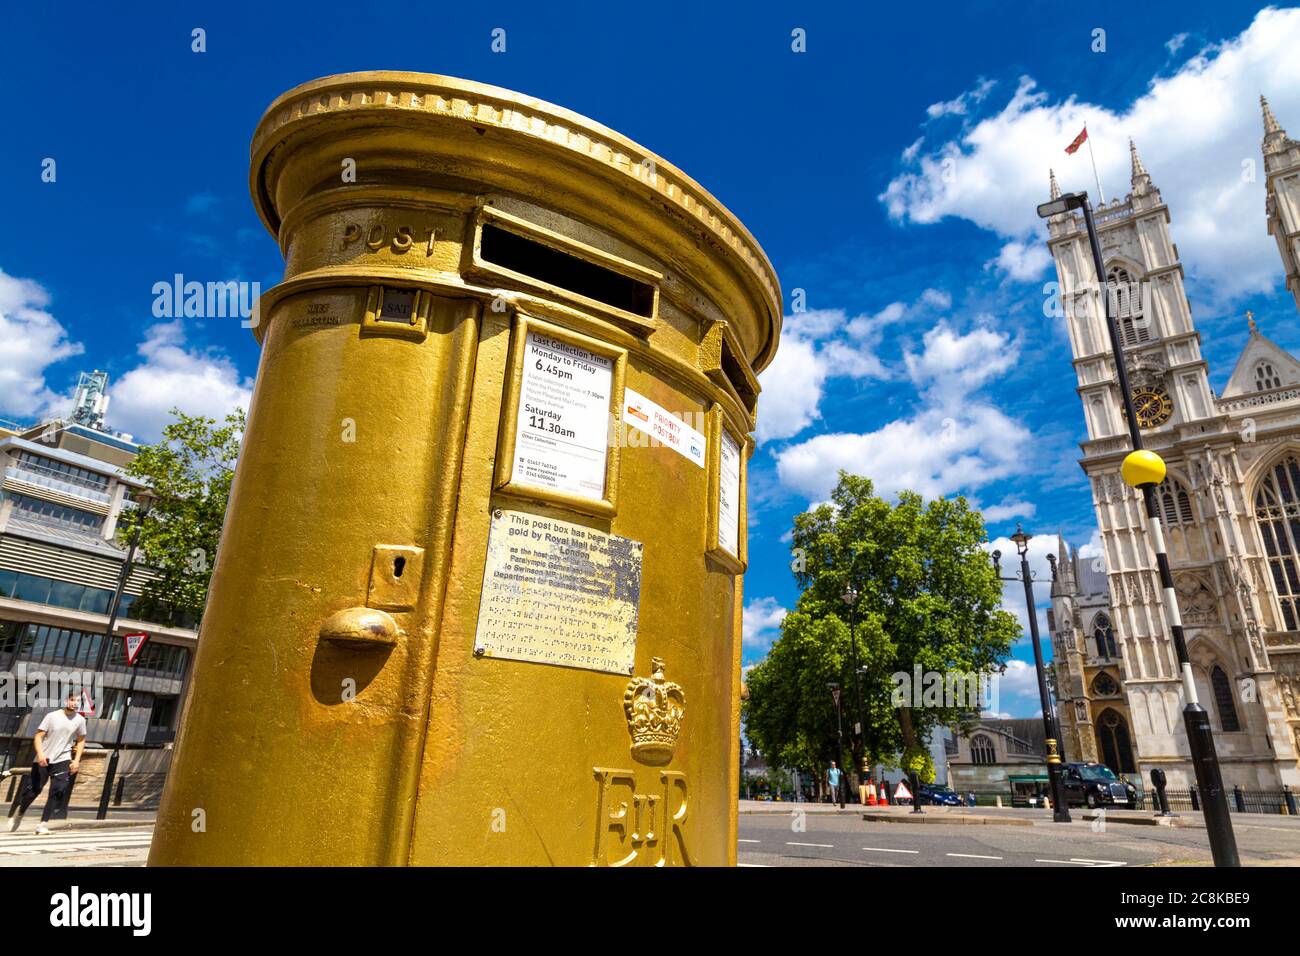 La scatola dipinse oro per celebrare Londra come la città ospitante dei Giochi Olimpici e Paralimpici del 2012, Tothill Street, Londra, Regno Unito Foto Stock